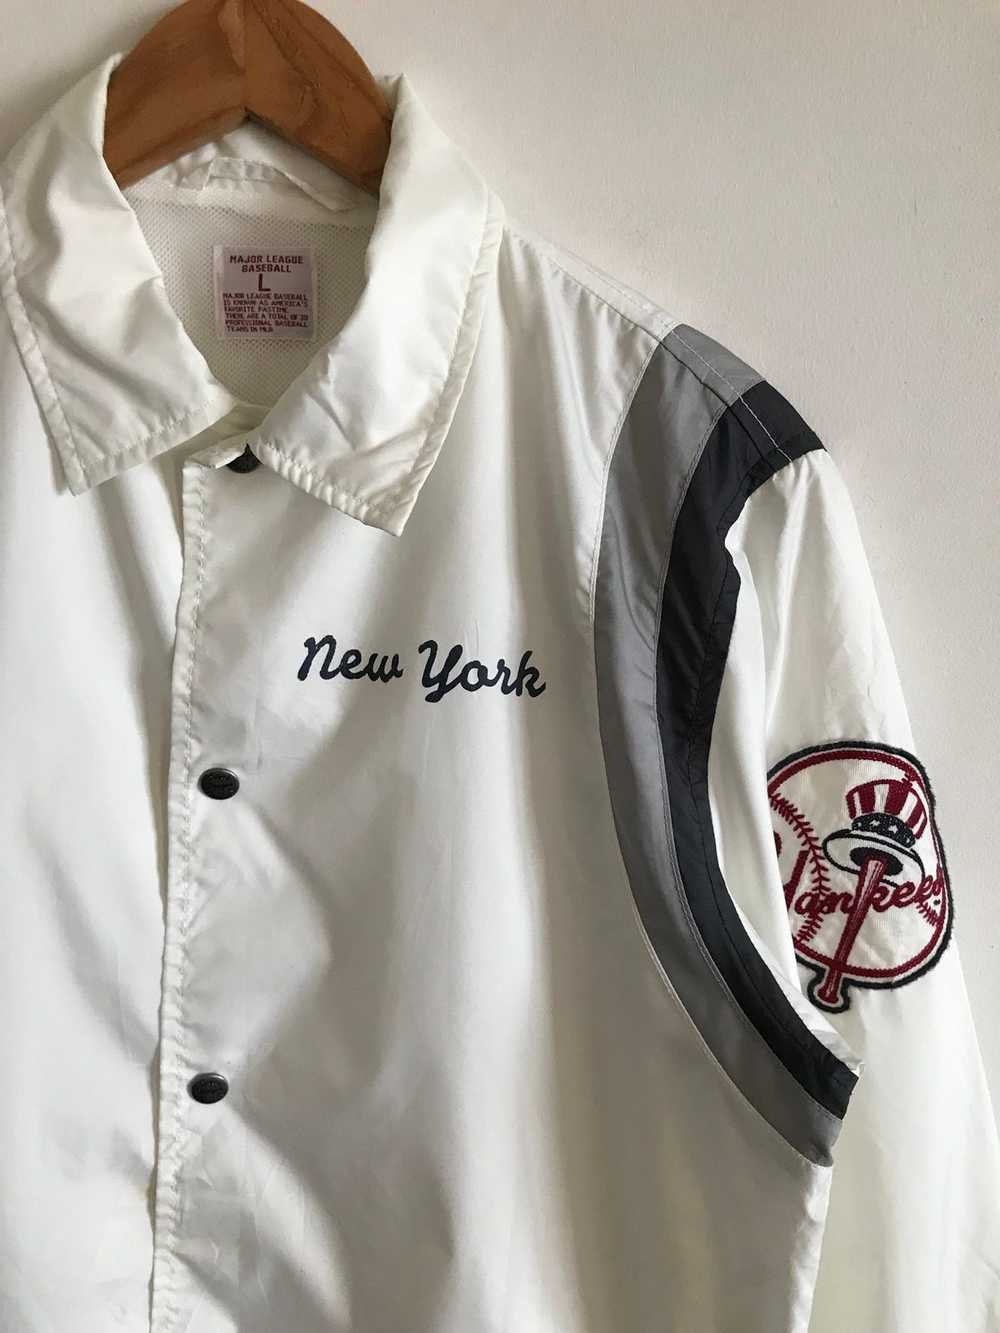 New York × New York Yankees × Uniqlo Coach Jacket - image 3